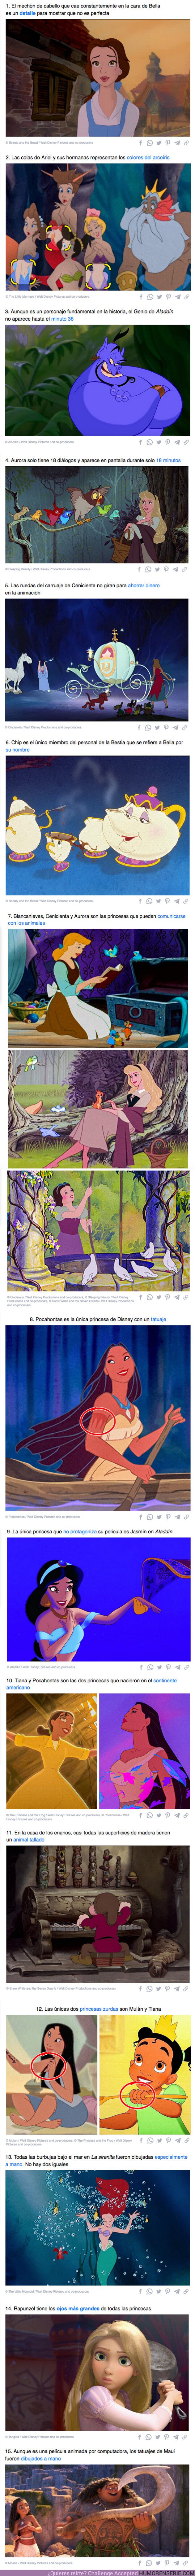 92015 - GALERÍA: 15 Datos locos sobre las pelis de princesas de Disney que se hacen evidentes al verlas más de una vez